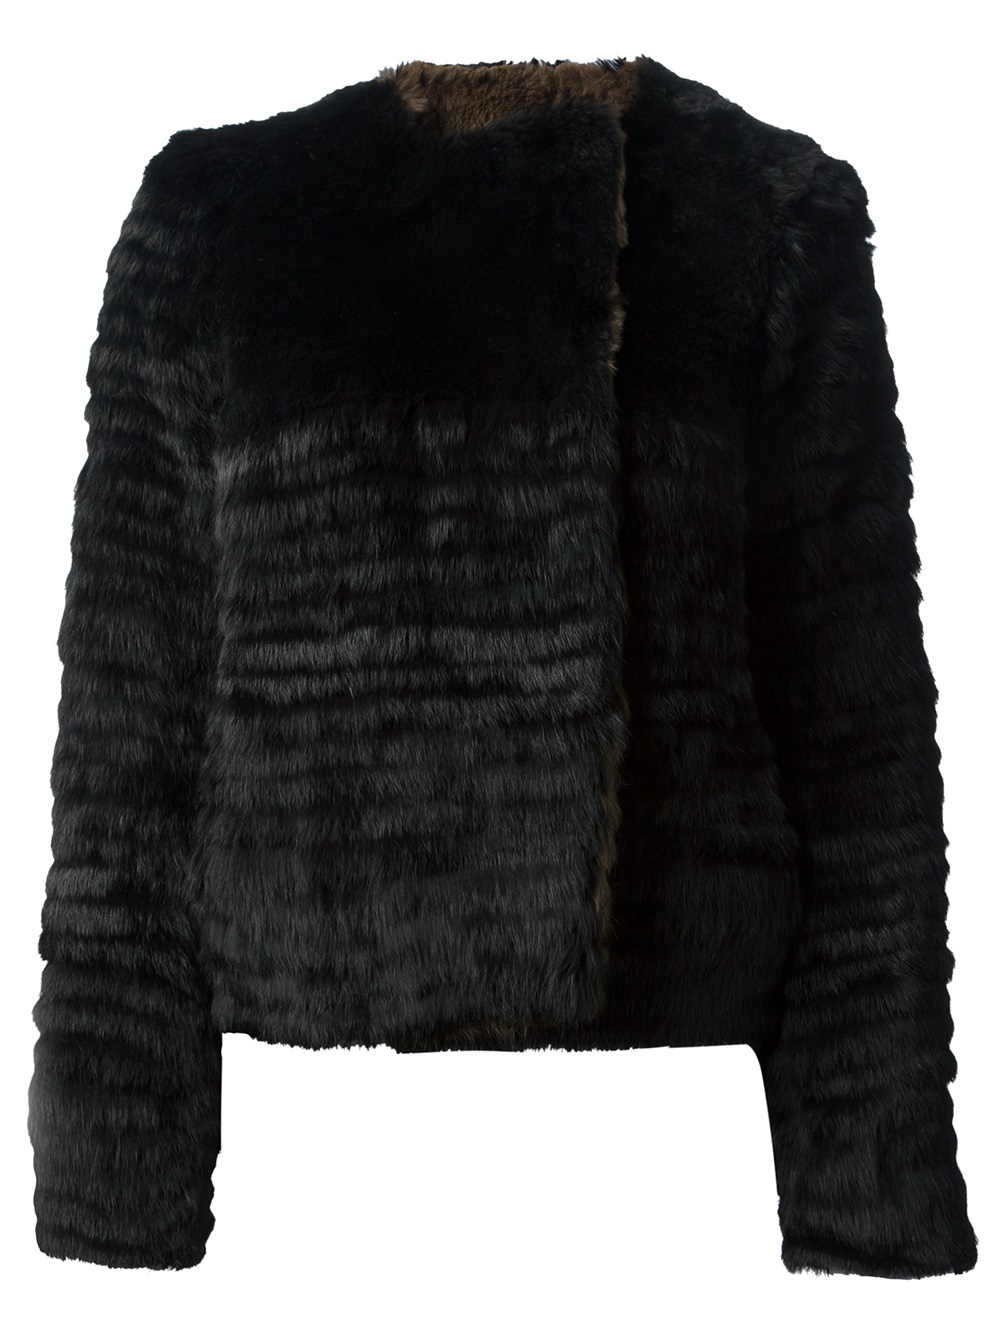 Meteo by yves salomon Reversible Fur Jacket in Black | Lyst